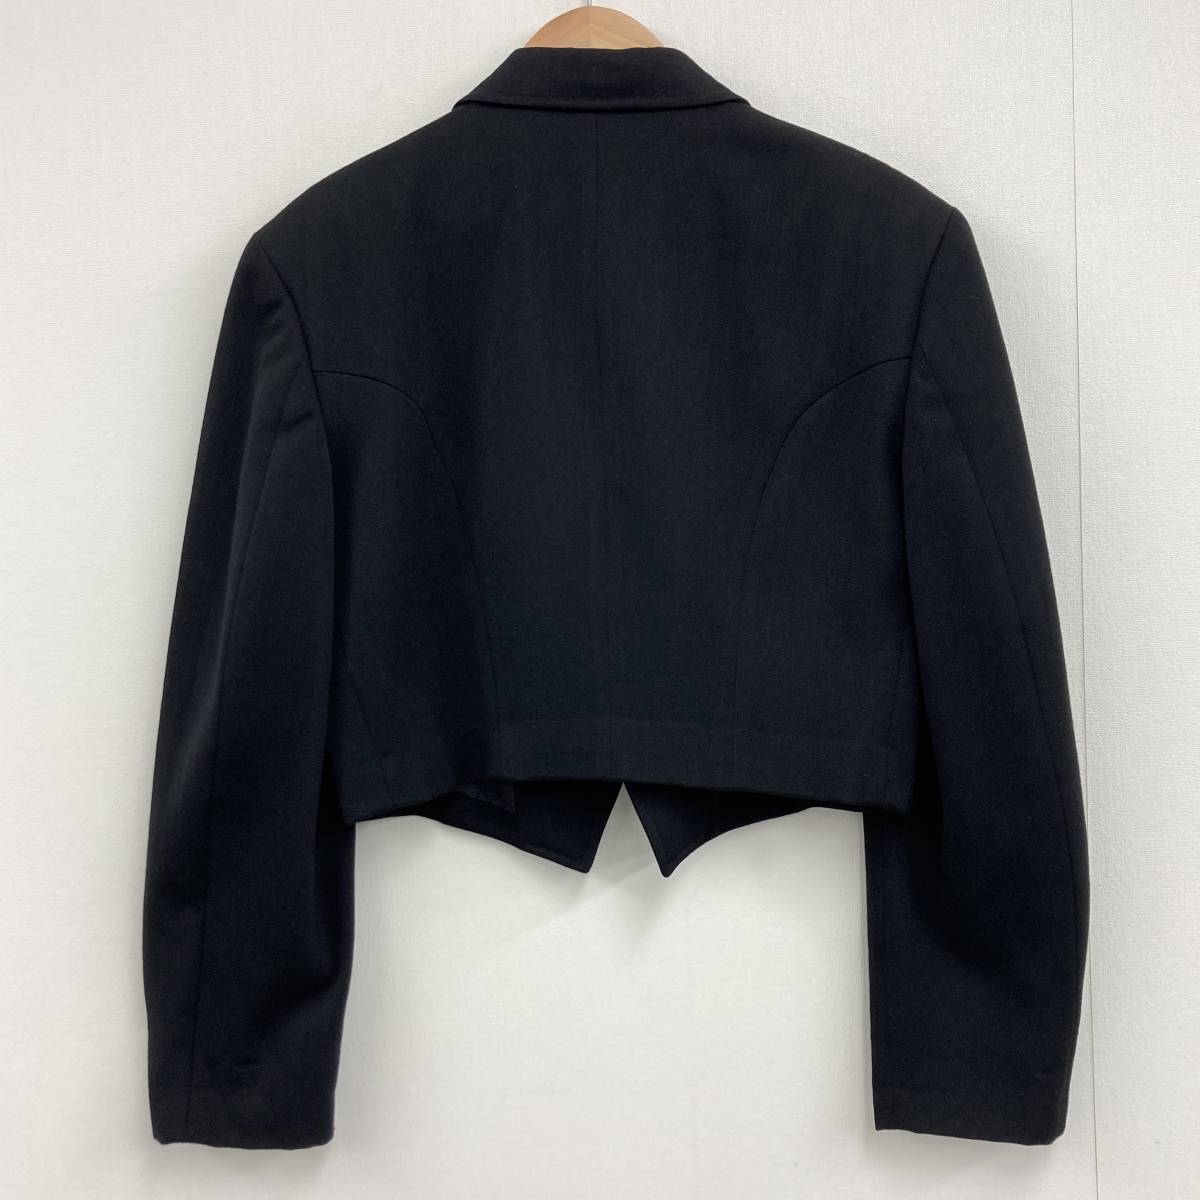 AD1989 tricot COMME des GARCONS короткий tailored jacket чёрный Toriko Comme des Garcons река . гарантия .80s VINTAGE archive 3010091